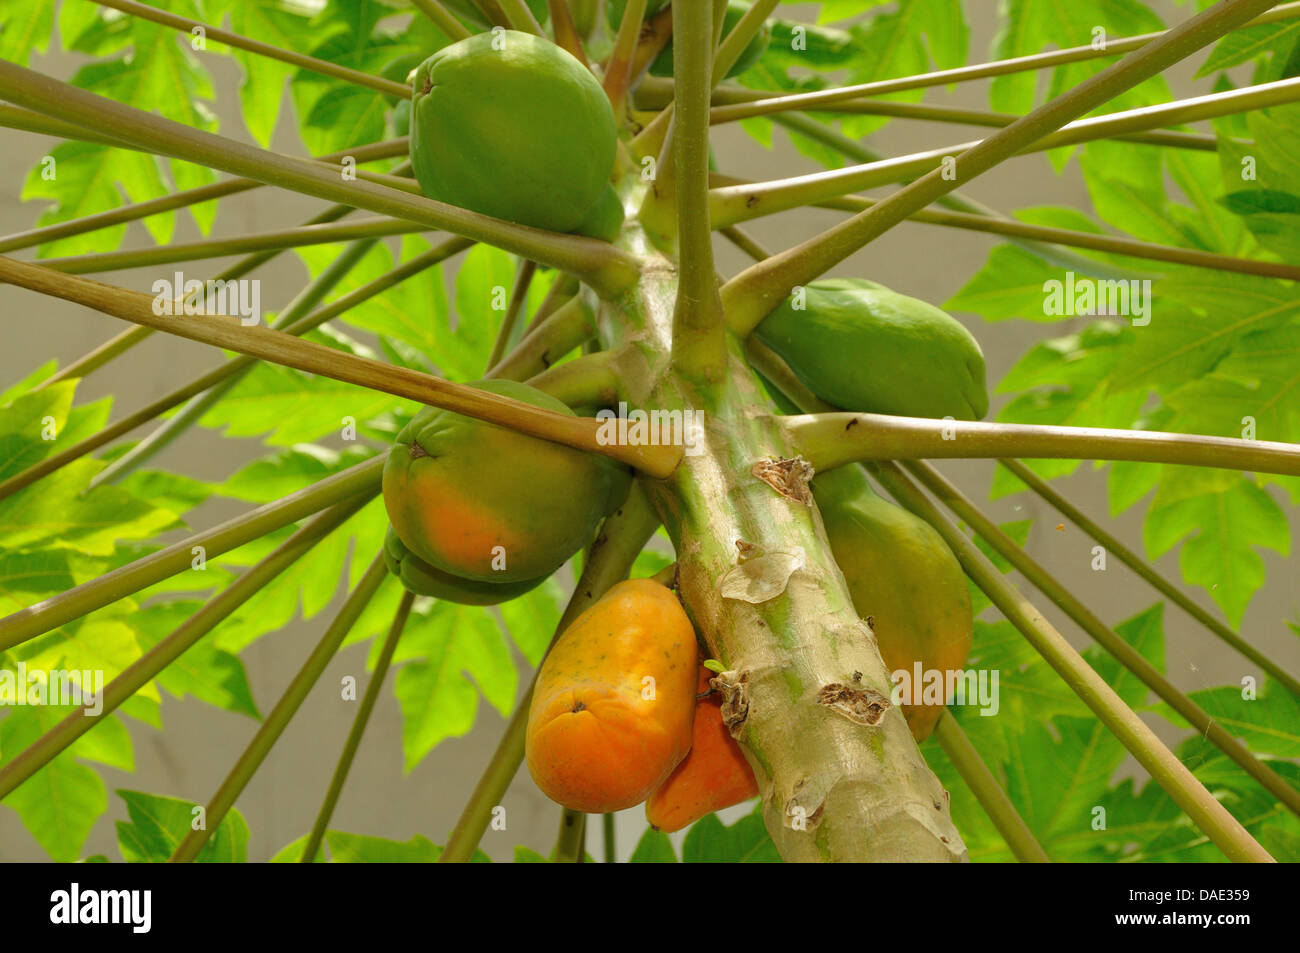 papaya, papaw, paw paw, mamao, tree melon (Carica papaya), tree with fruits Stock Photo